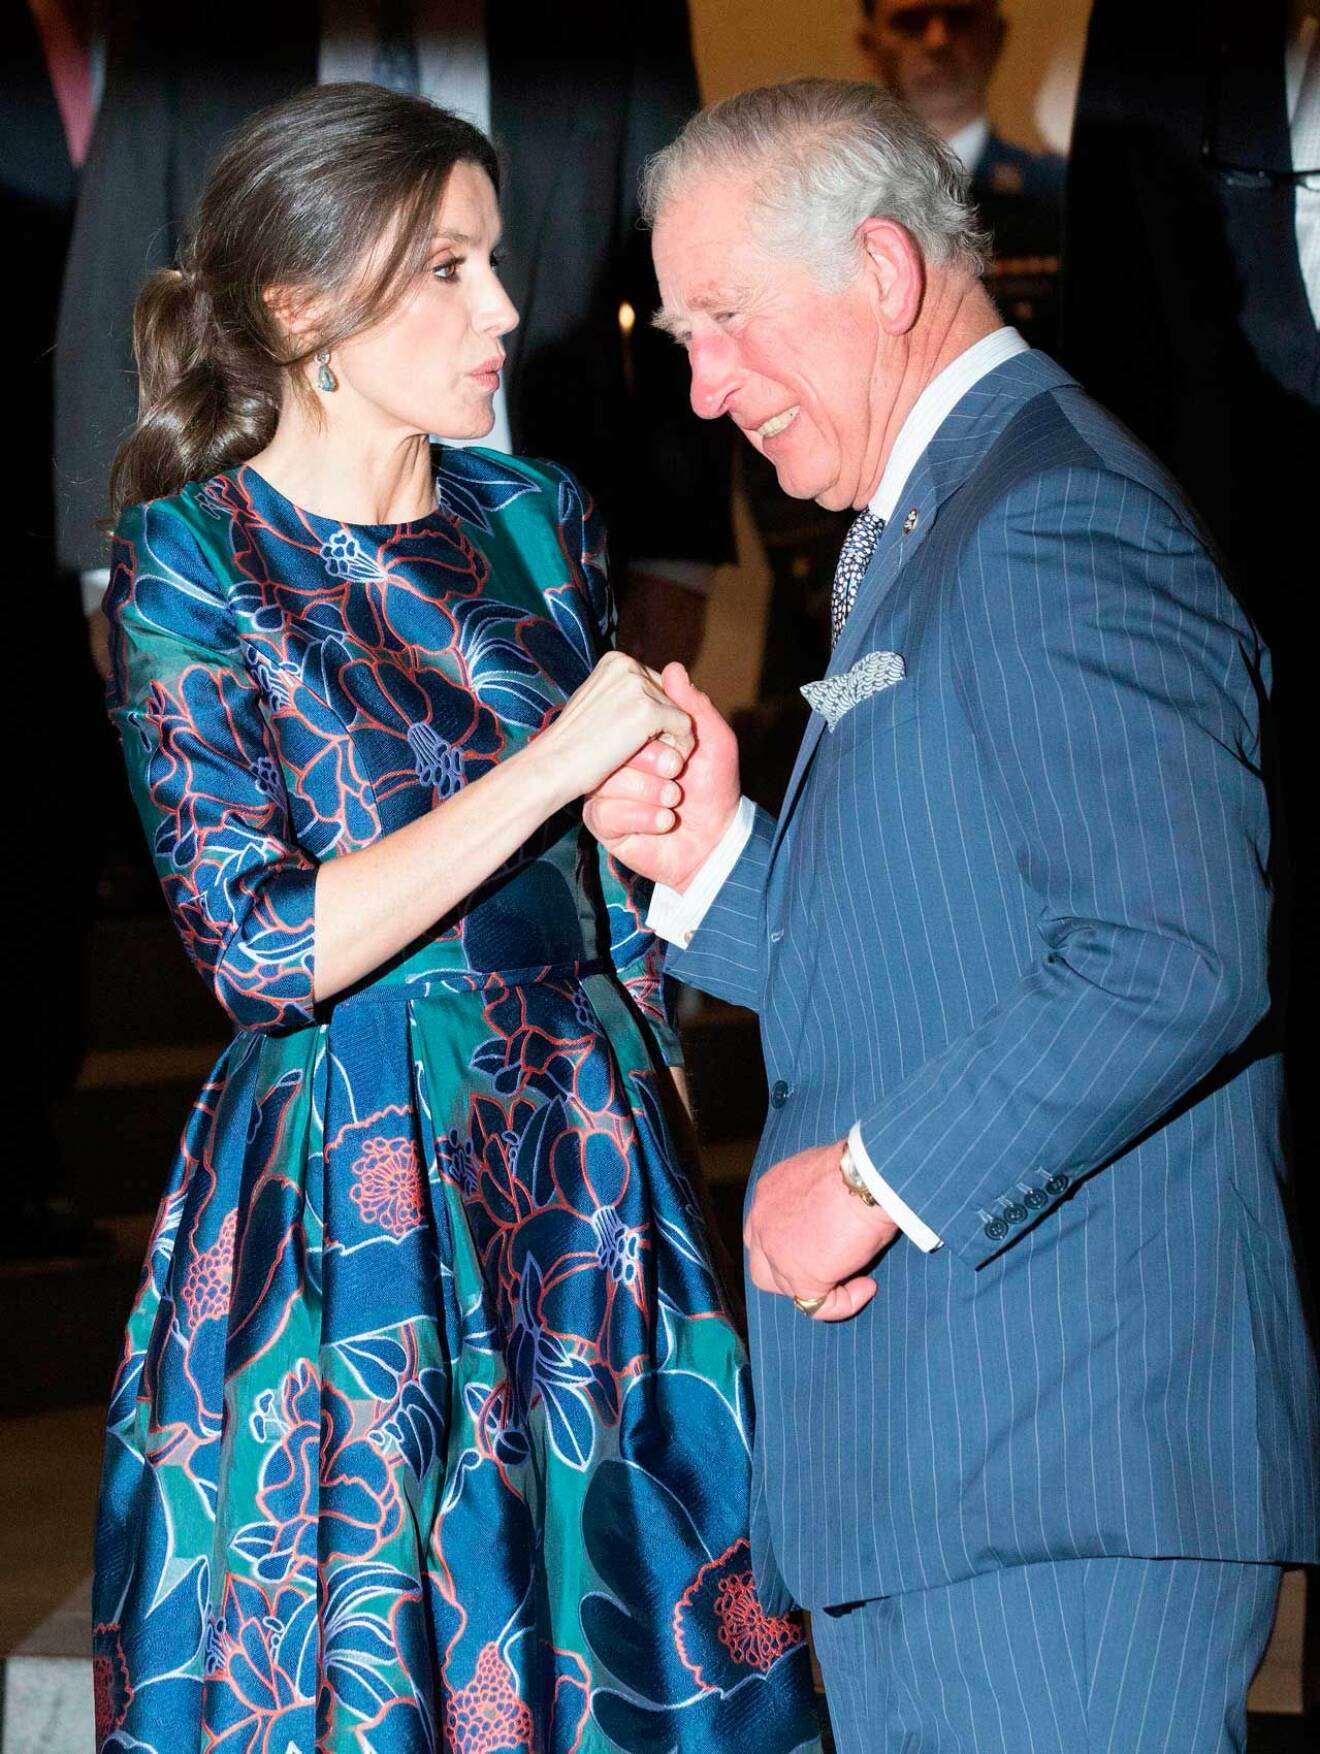 Prins Charles och drottning Letizia på National Gallery i London. Kulturkrock.